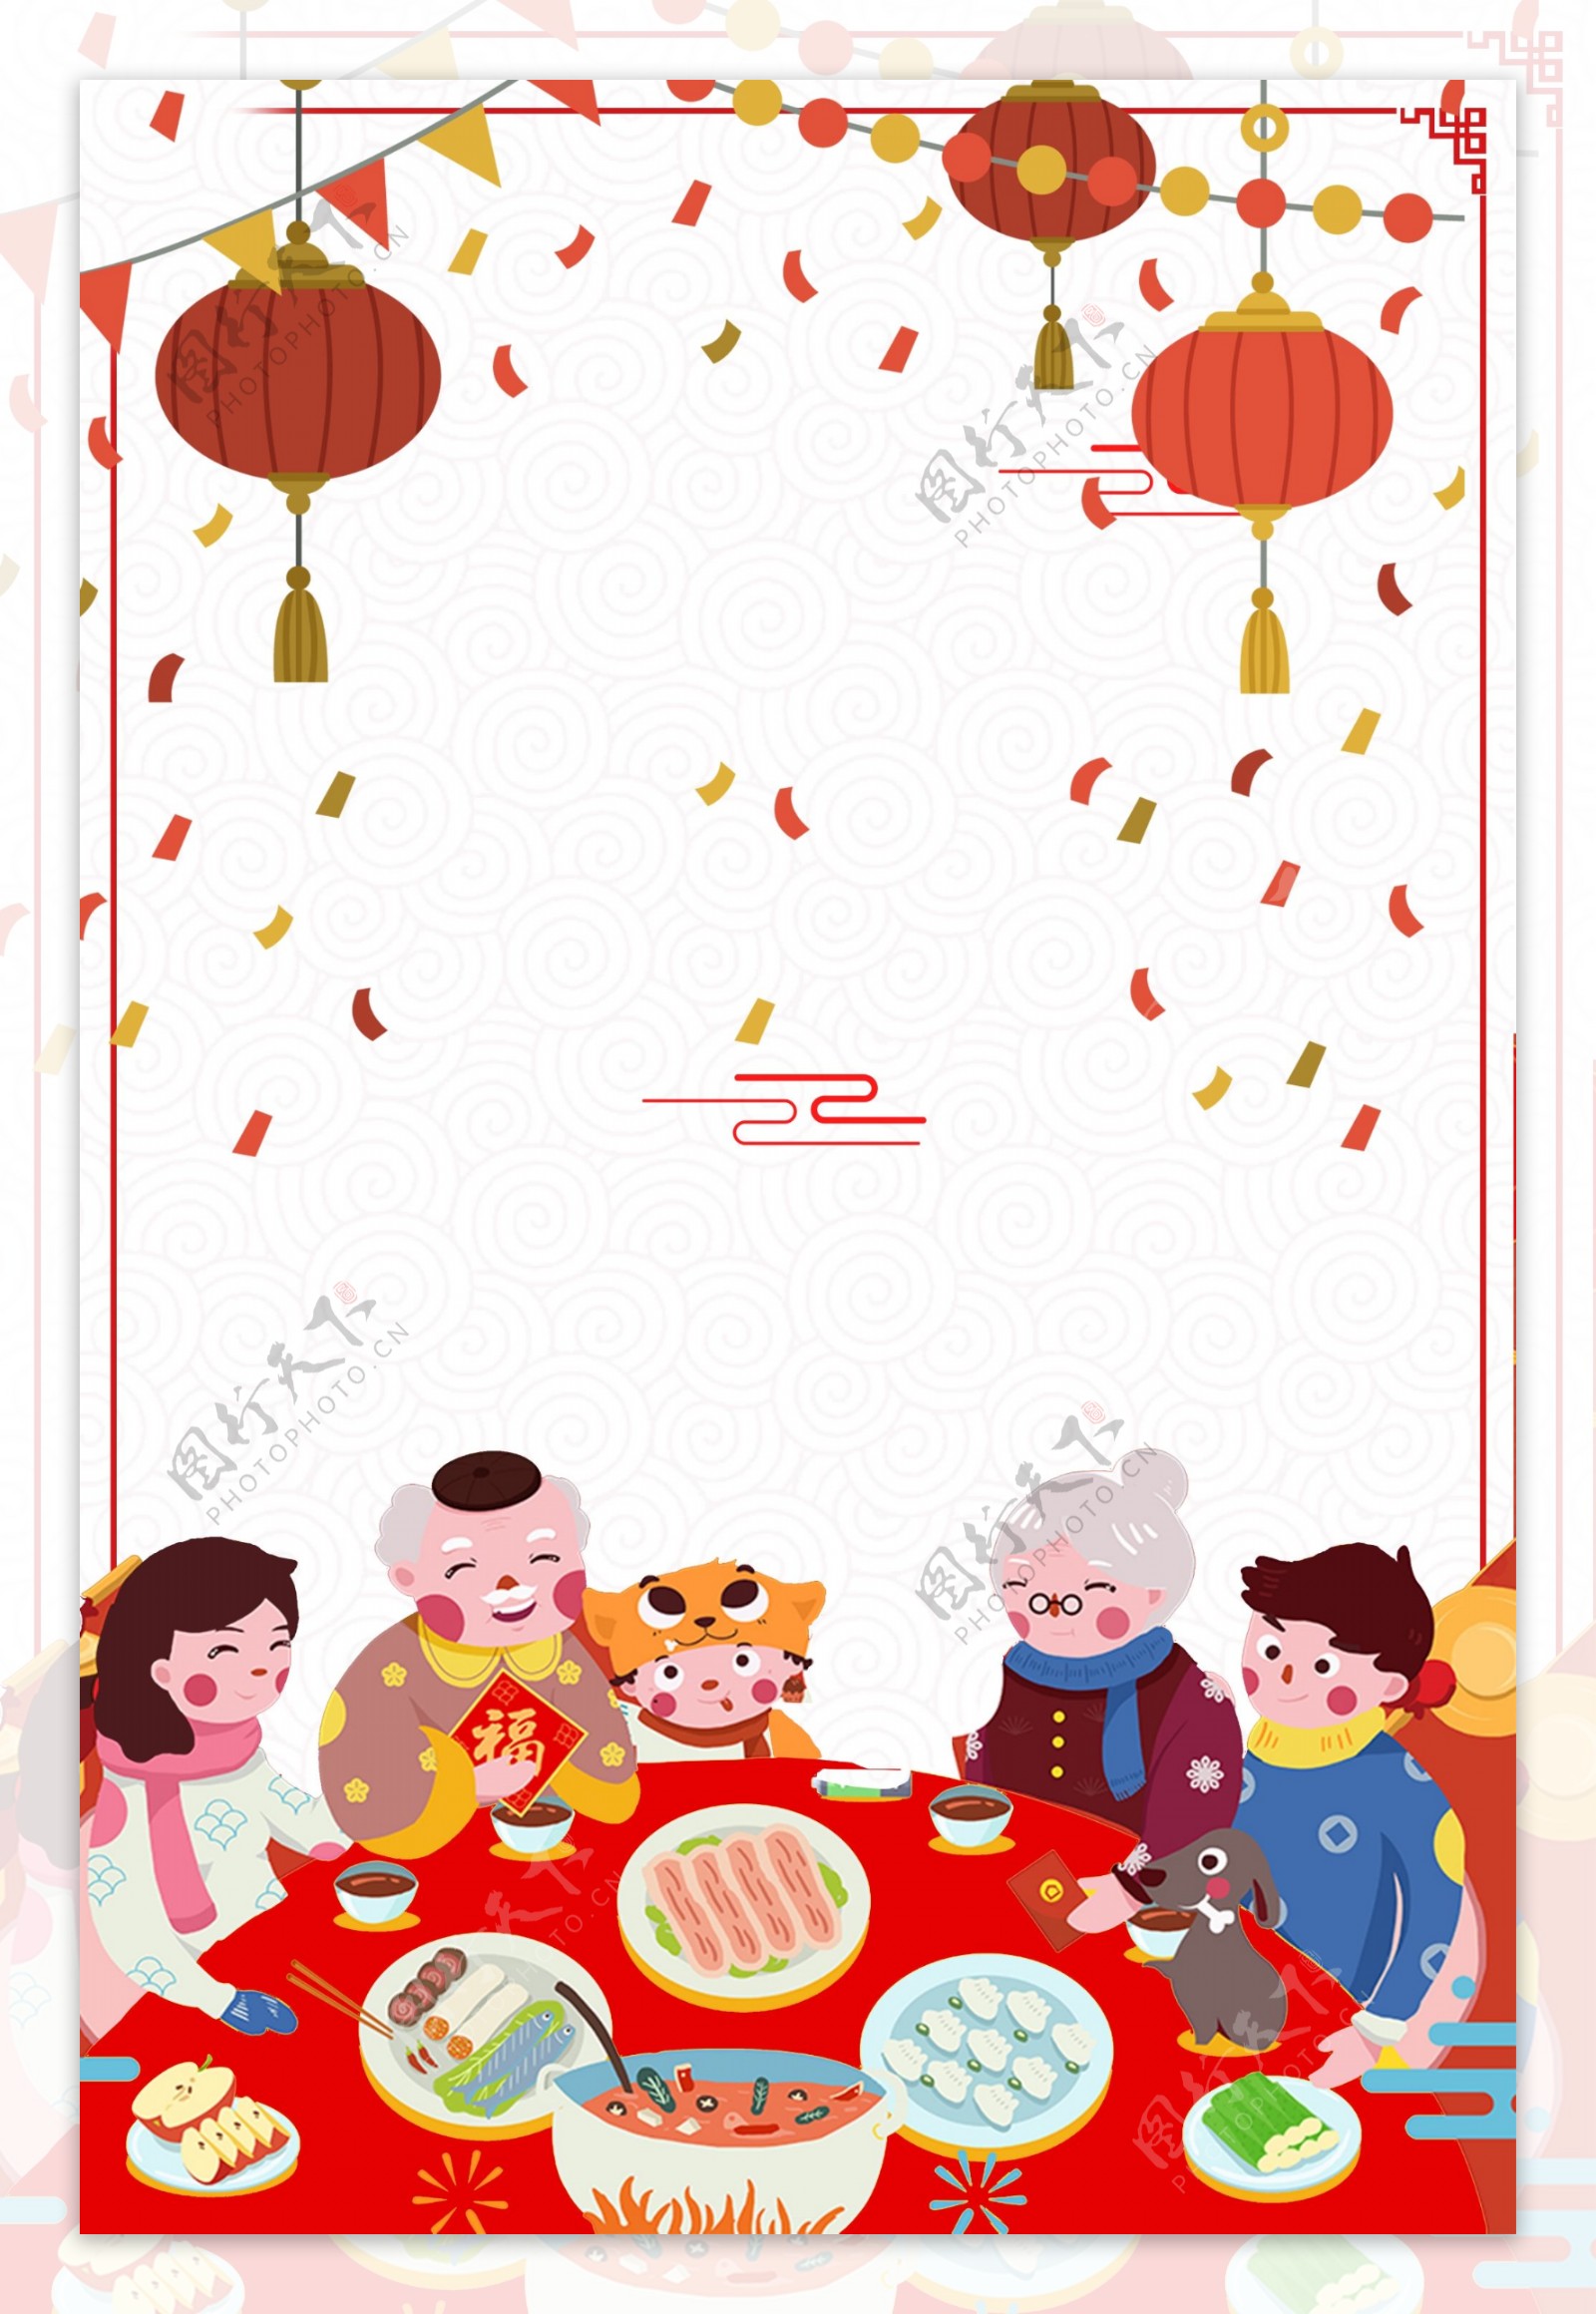 年夜饭传统节日新年快乐广告背景图